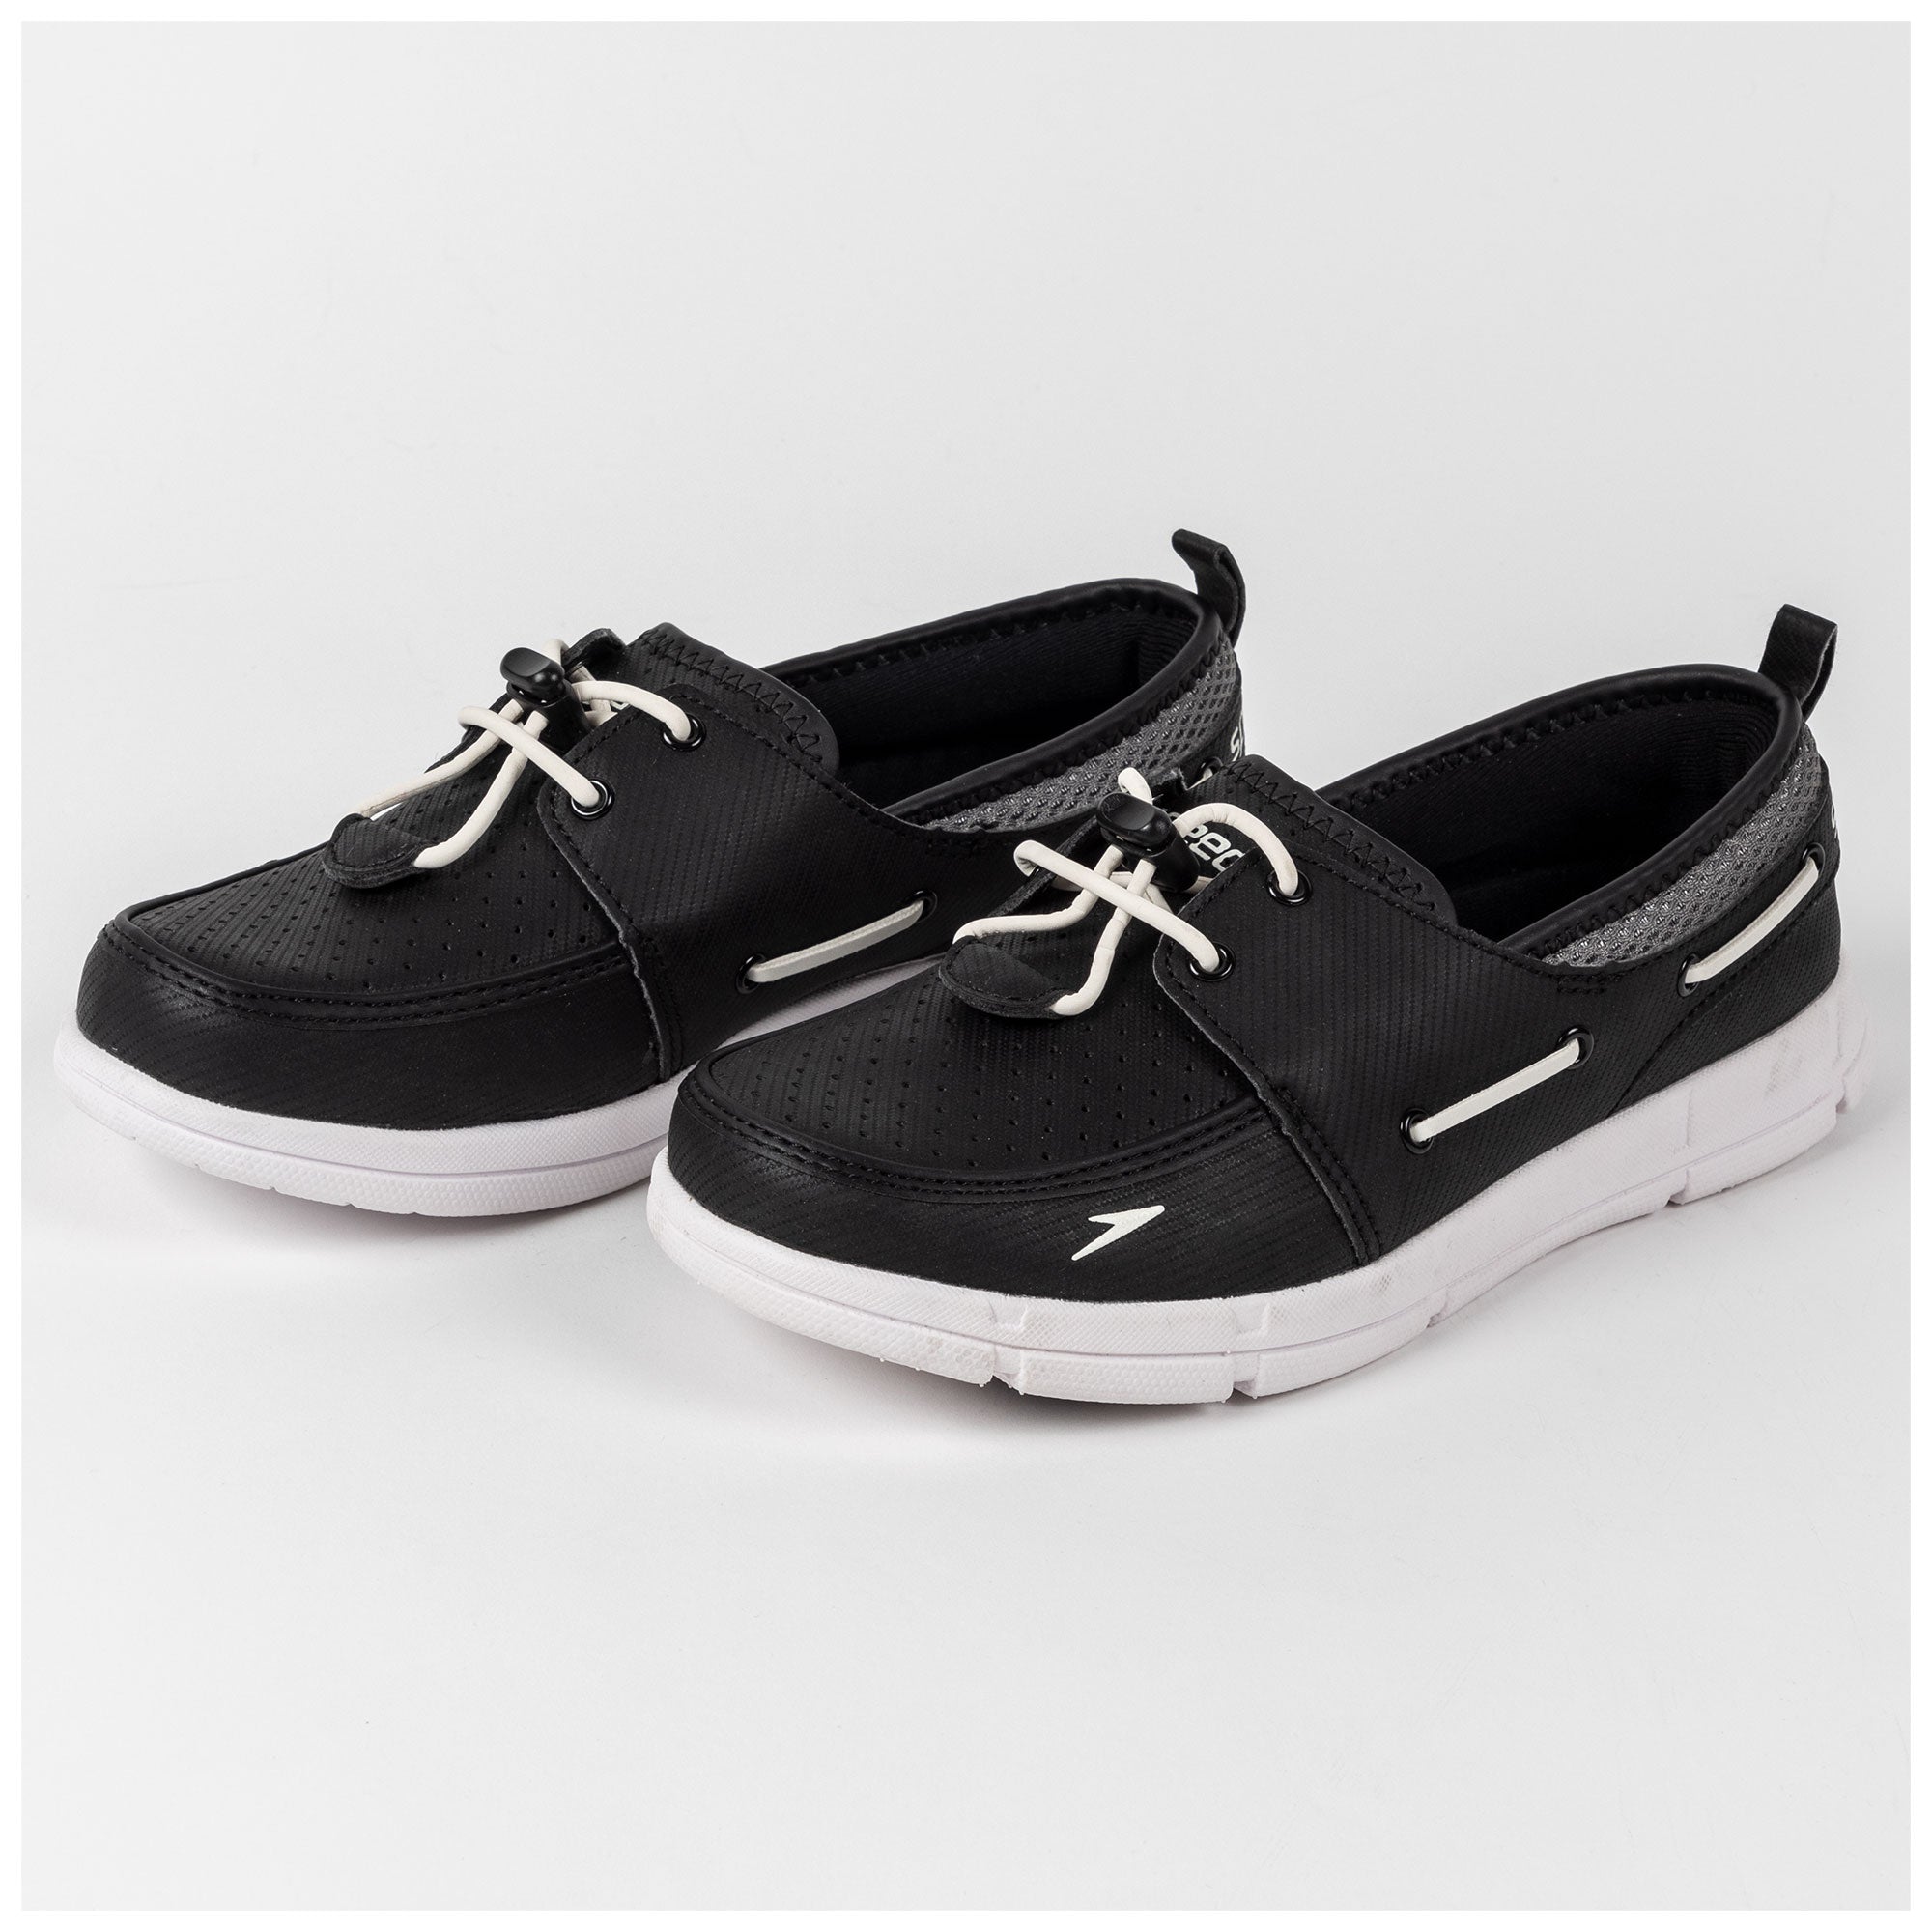 Speedo® Women's Boat Shoes - Black - 6